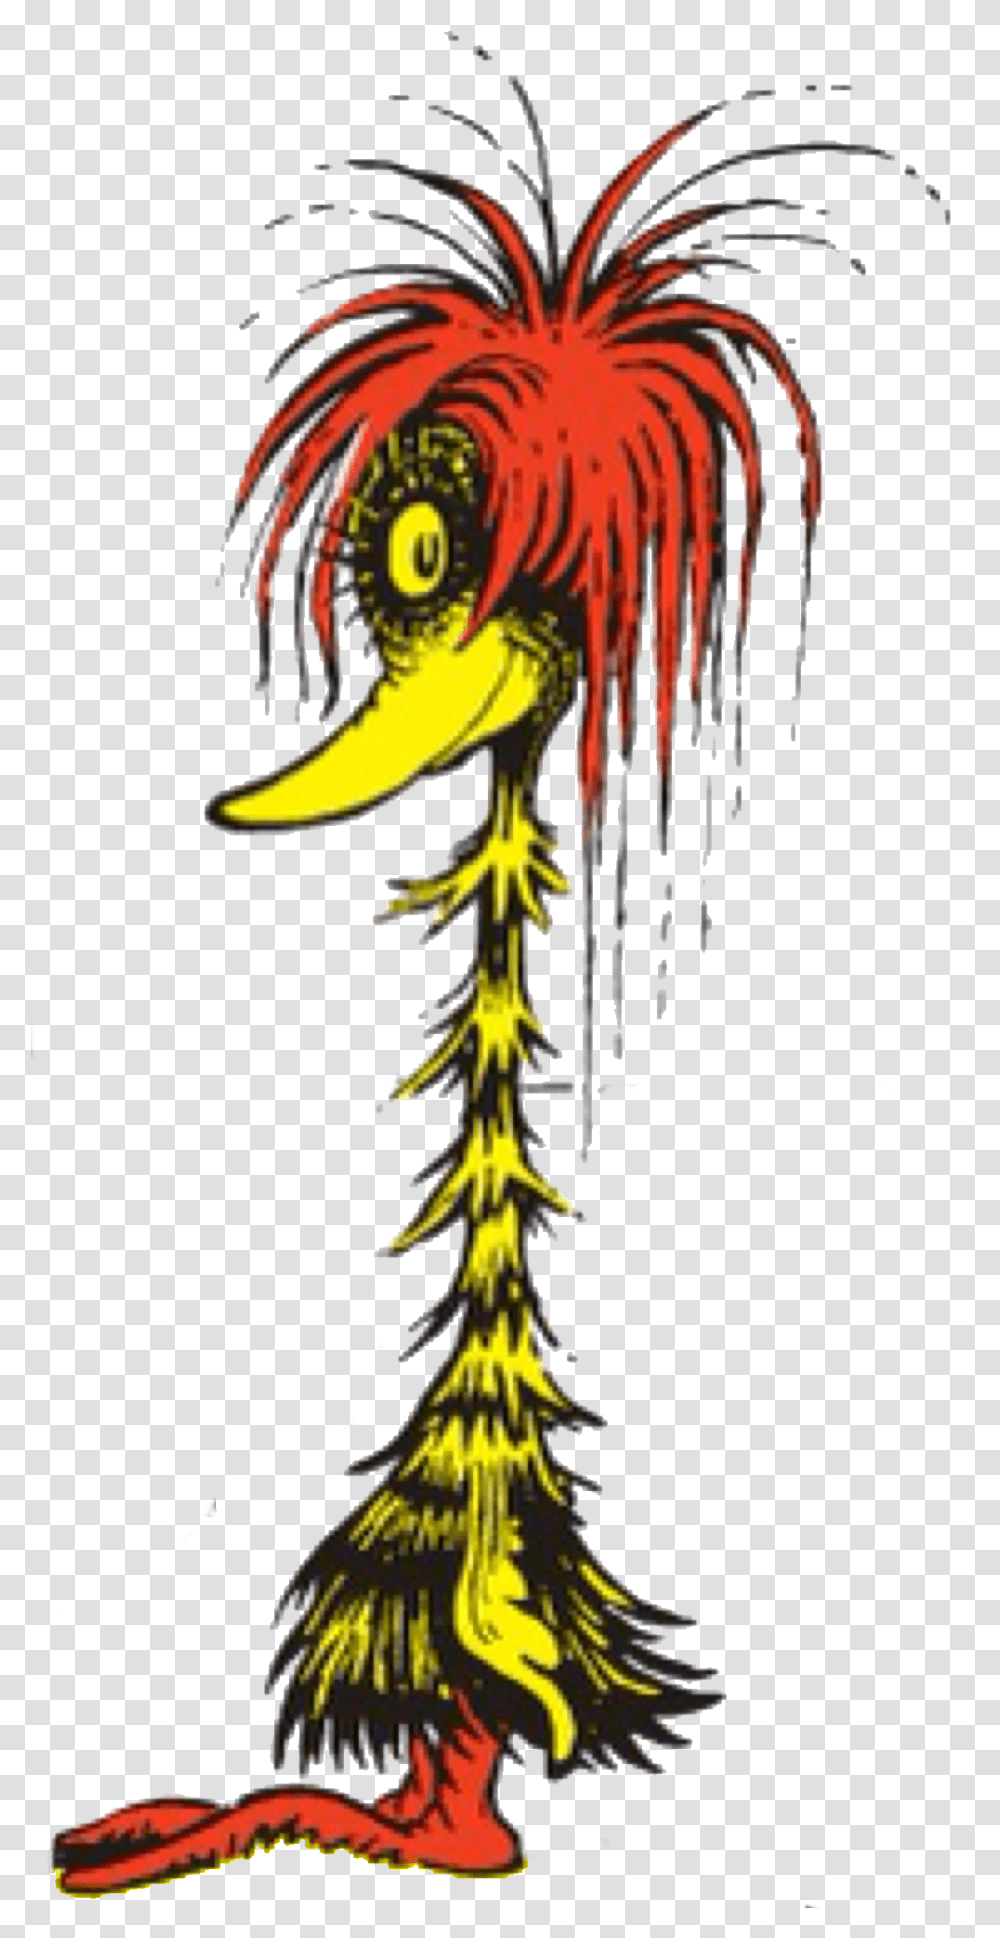 Seuss Clip Art If I Ran The Zoo Character, Beak, Bird, Animal, Plant Transparent Png